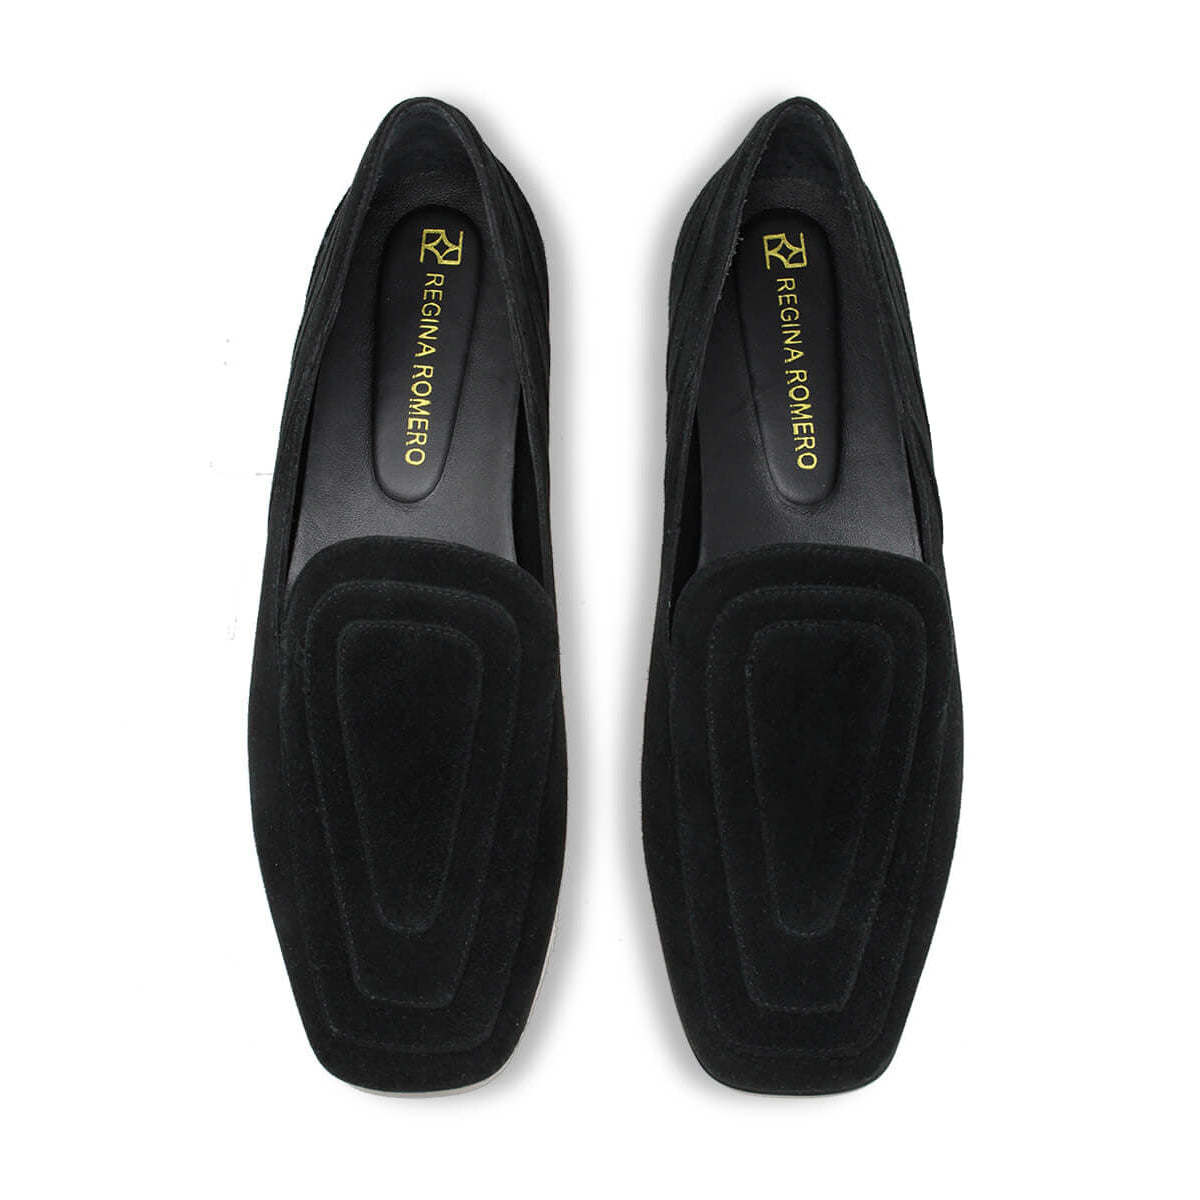 RINGS - Black Suede Regina Romero Women's Flat Moccasin Shoe in Leather